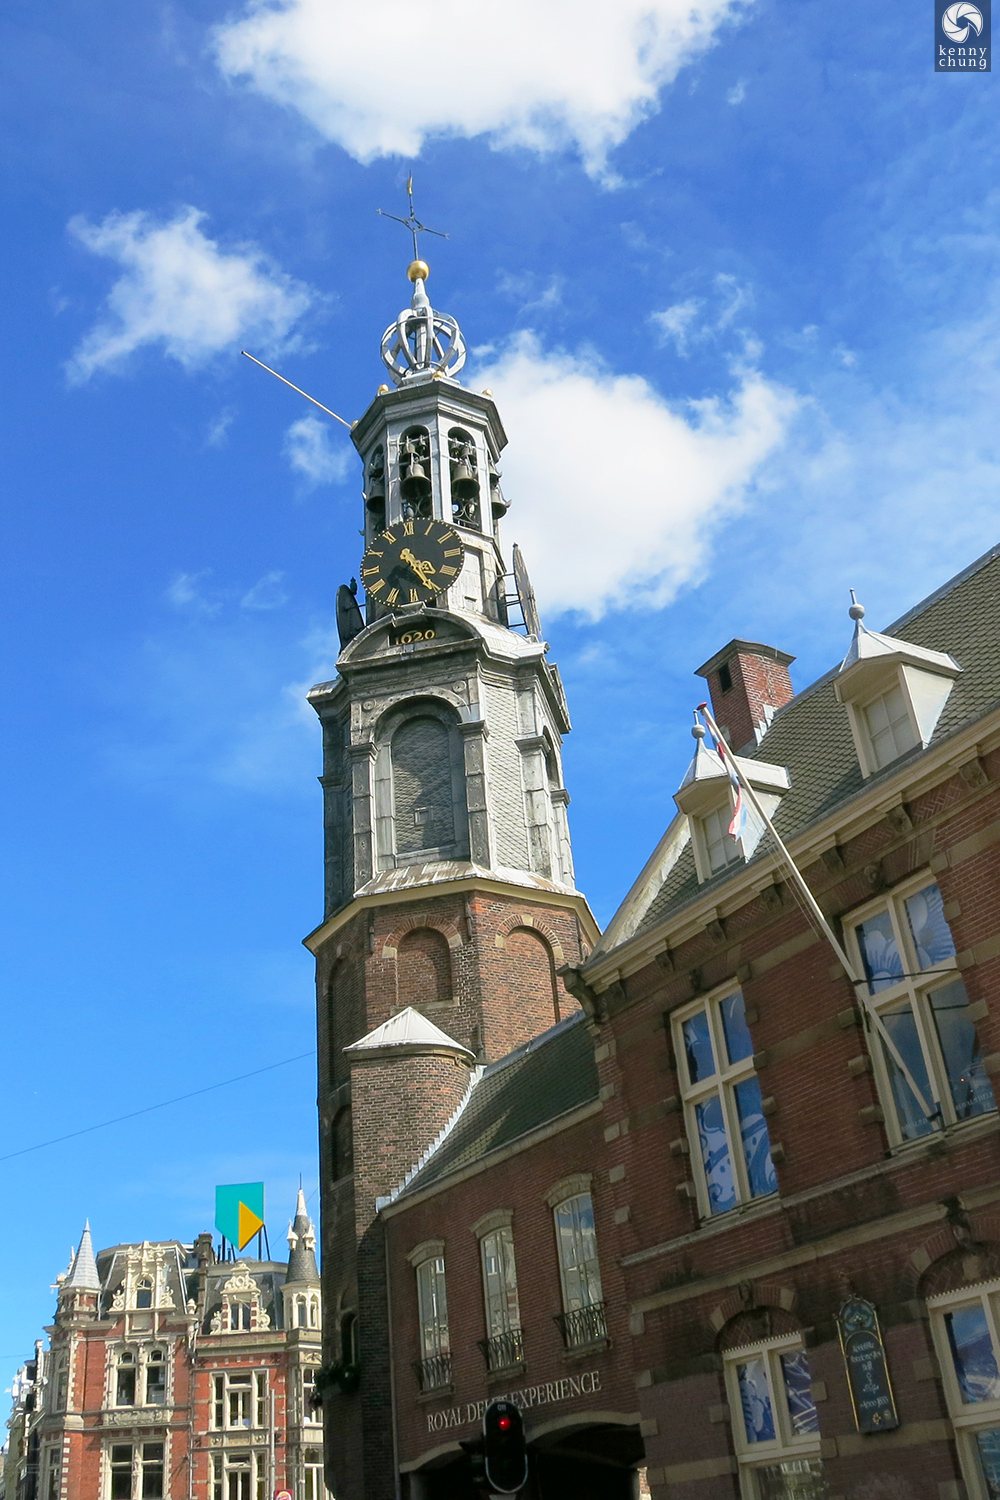 The Munt Tower (Monttoren) in Muntplein in Amsterdam